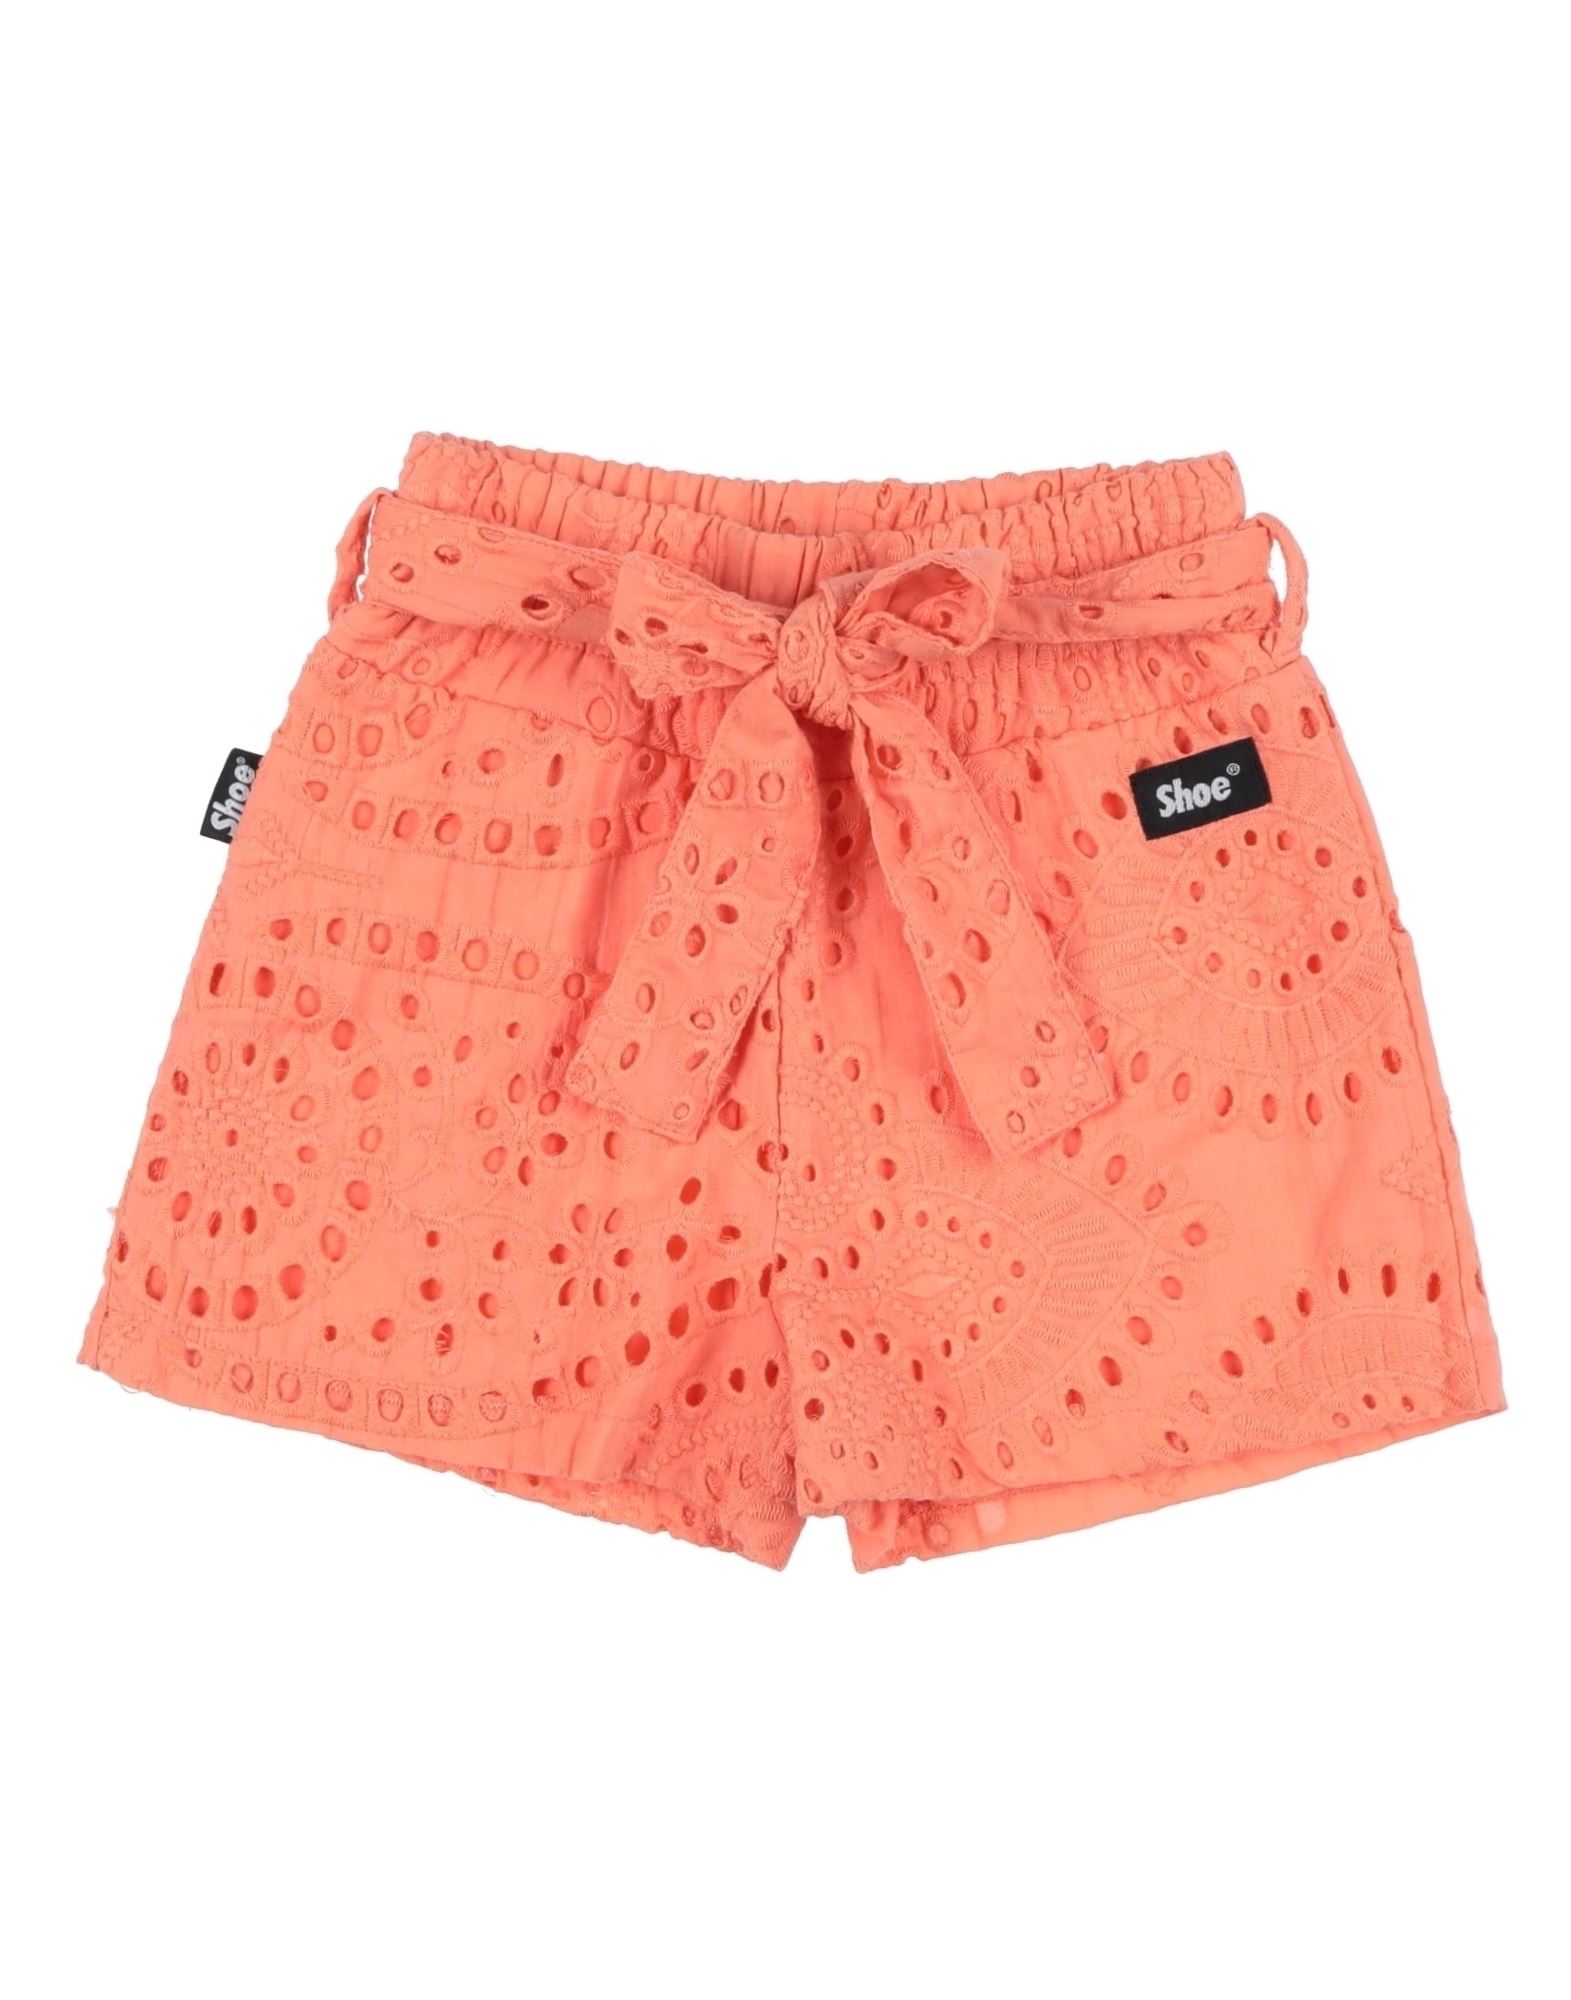 Shoe® Kids' Shoe Toddler Girl Shorts & Bermuda Shorts Salmon Pink Size 4 Cotton